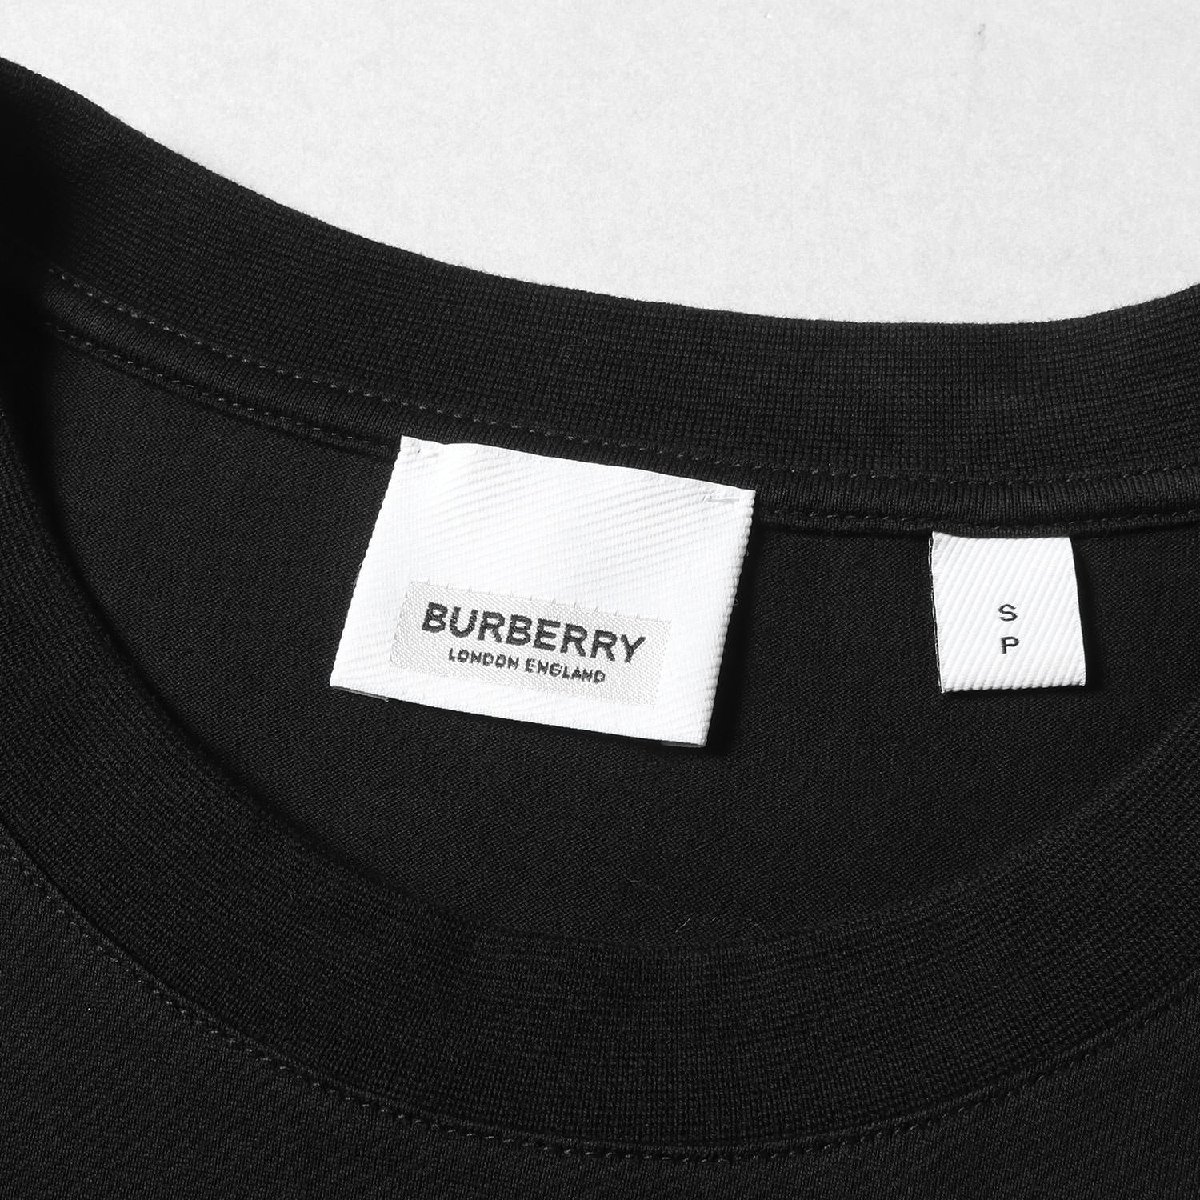 BURBERRY バーバリー Tシャツ サイズ:S LOVE フォト モンタージュ プリント 8030765 クルーネック LONDON ENGLAND ブラック 黒 ブランド_画像3